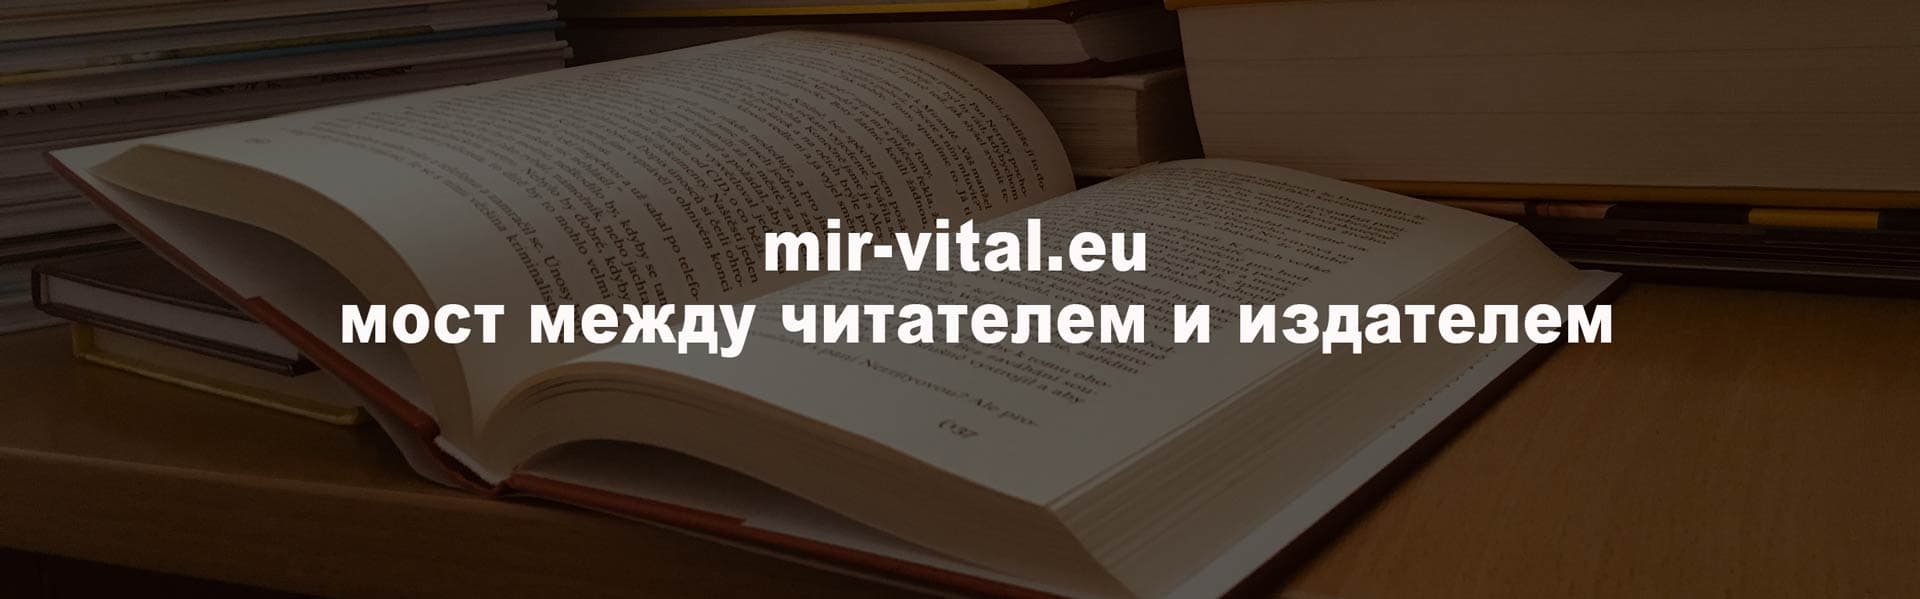 mir-vital мост между читателем и издателем русской книги!